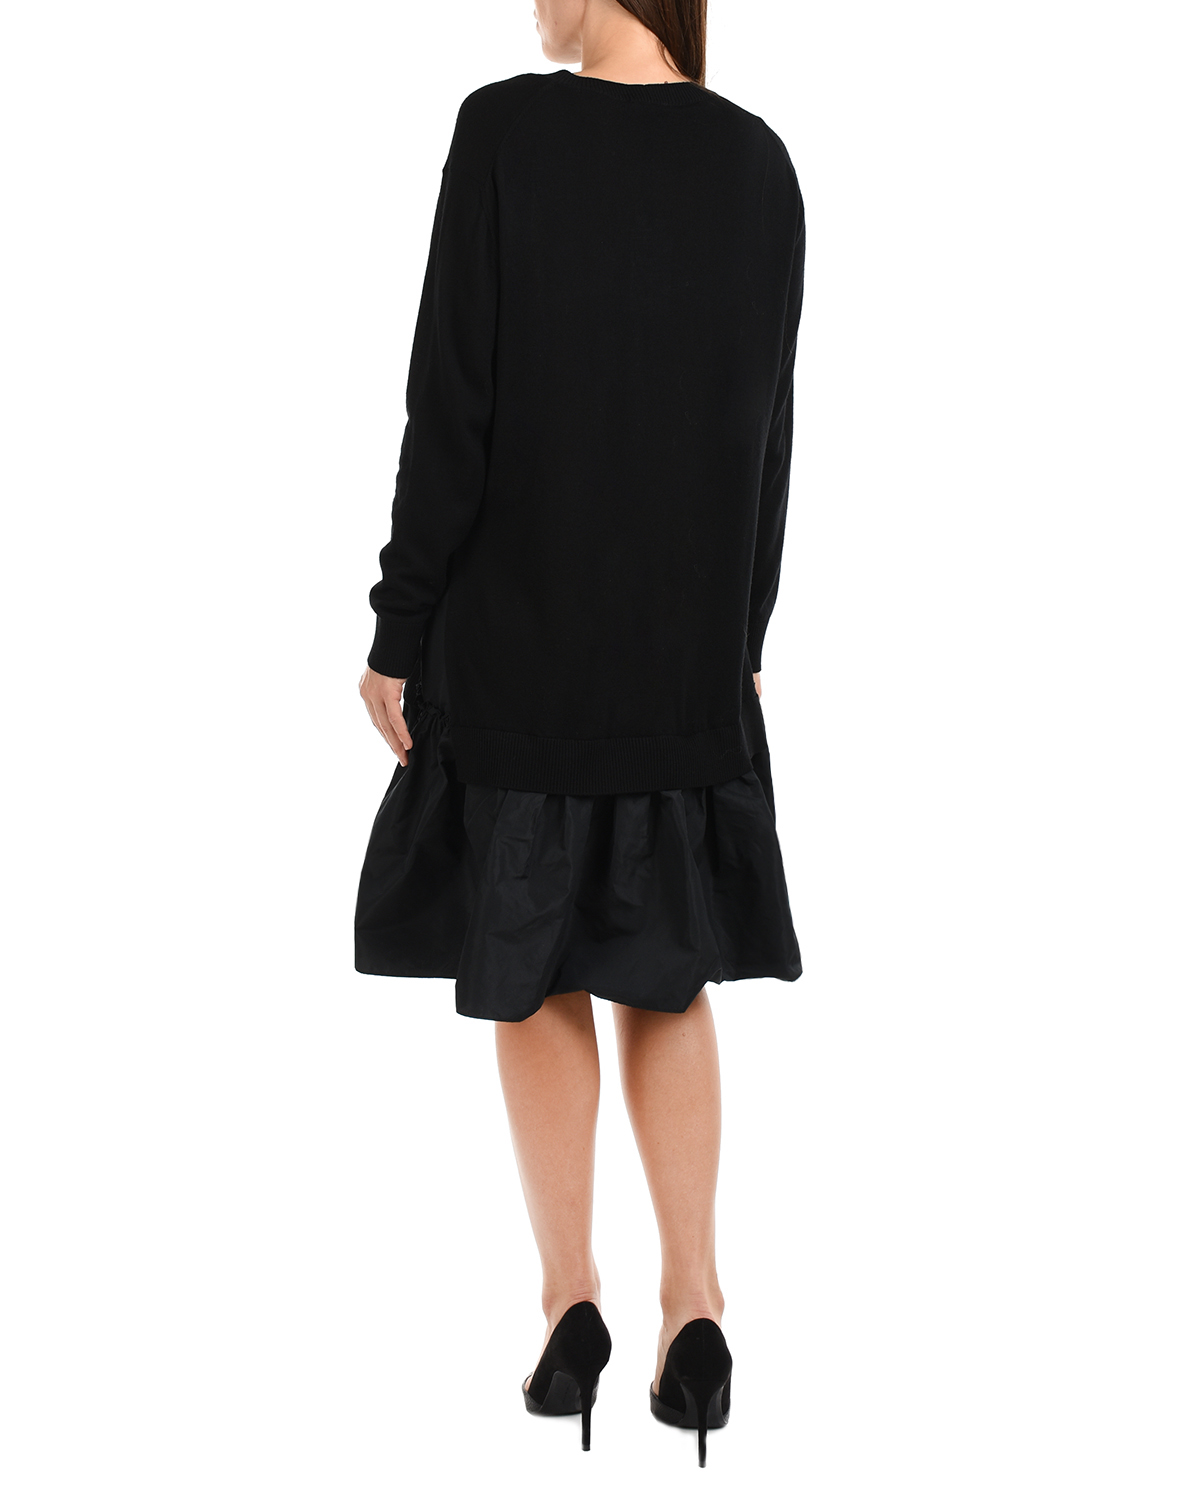 Трикотажное платье черного цвета Vivetta, размер 42 - фото 3